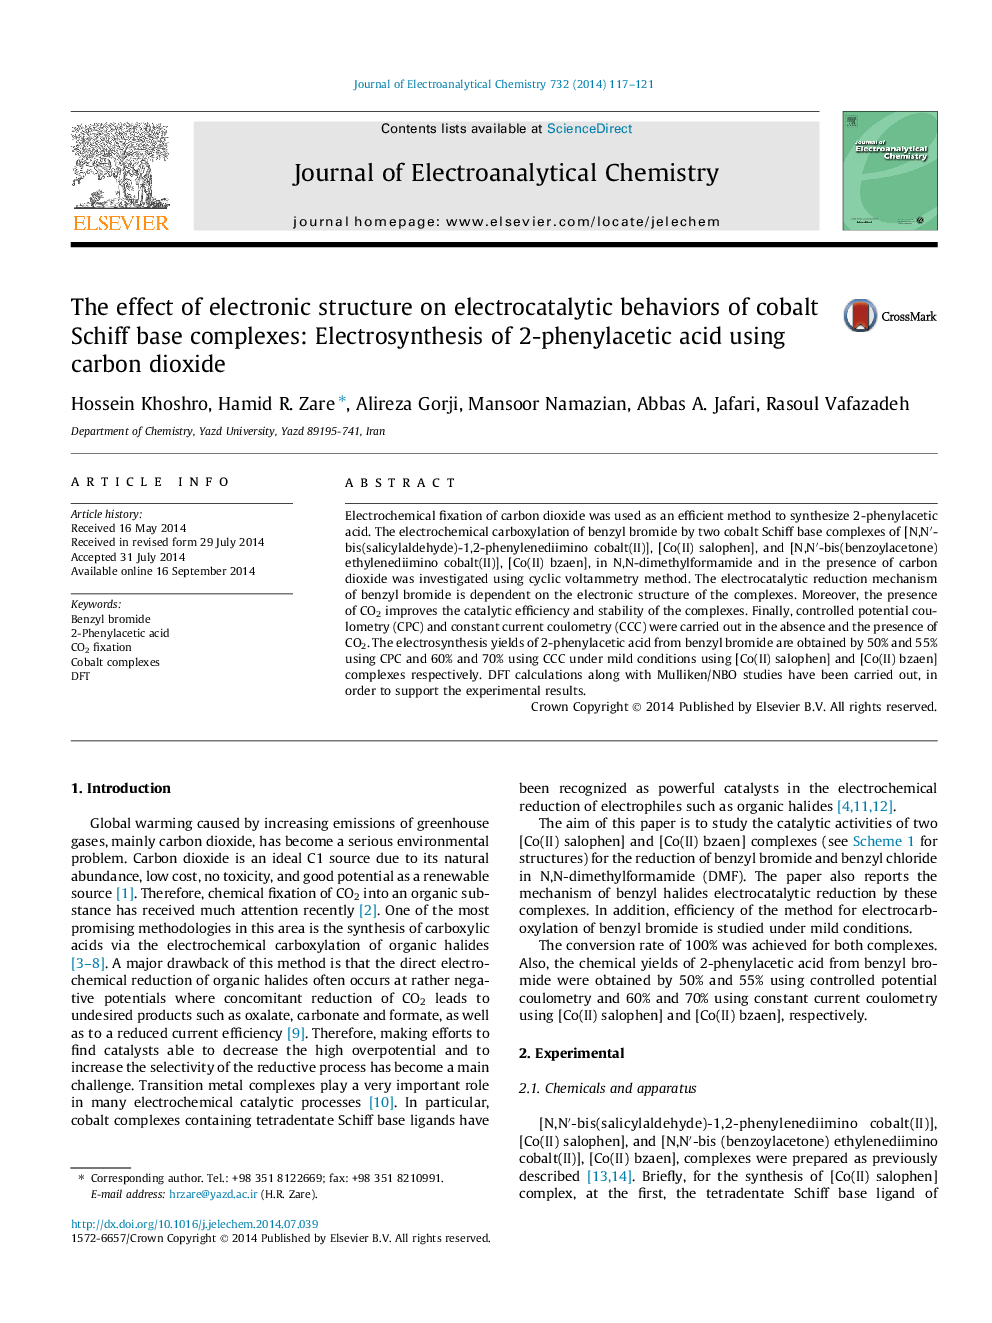 تأثیر ساختار الکترونیکی بر رفتار الکتروکاتالیستی مجتمع های پایه کبالت شیف: الکترو سنتز اسید 2-فنیل اکتین با استفاده از دی اکسید کربن 